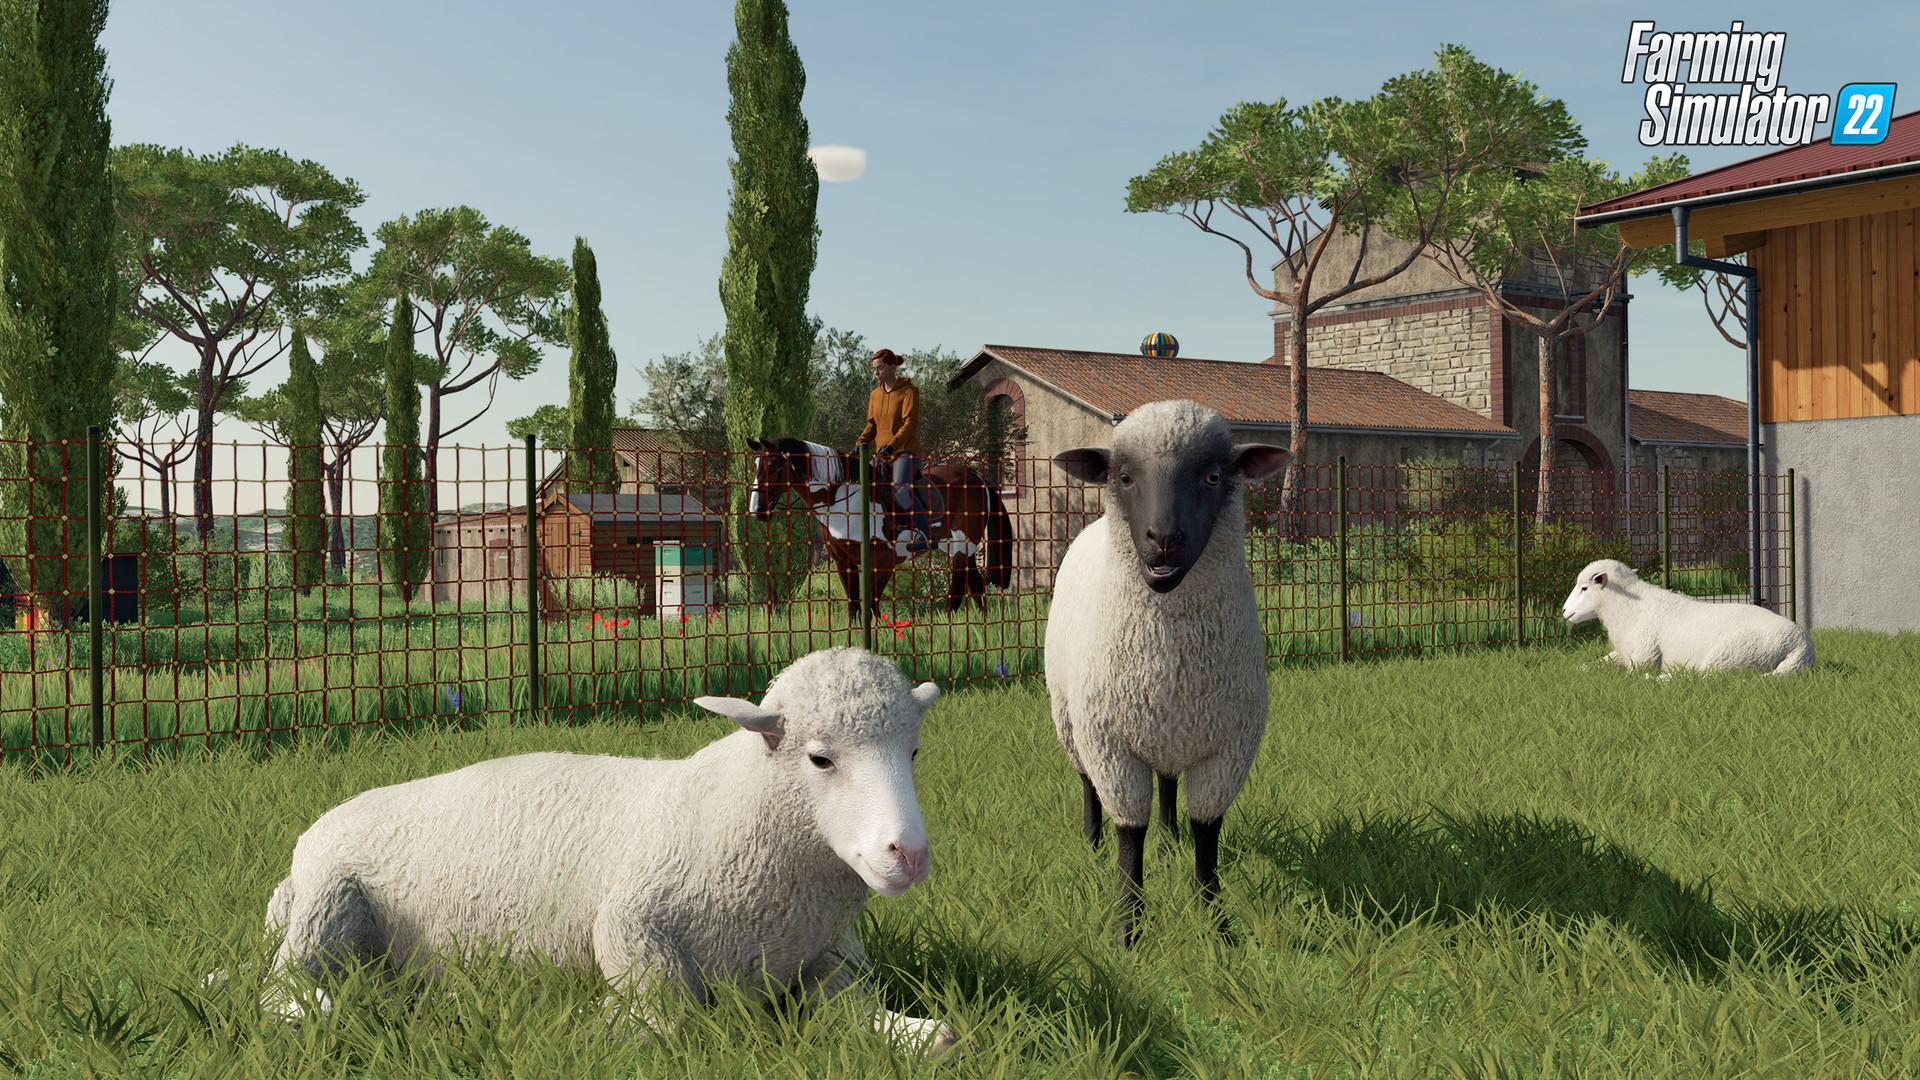 Farming Simulator 22: Premium Edition Epic Games Account